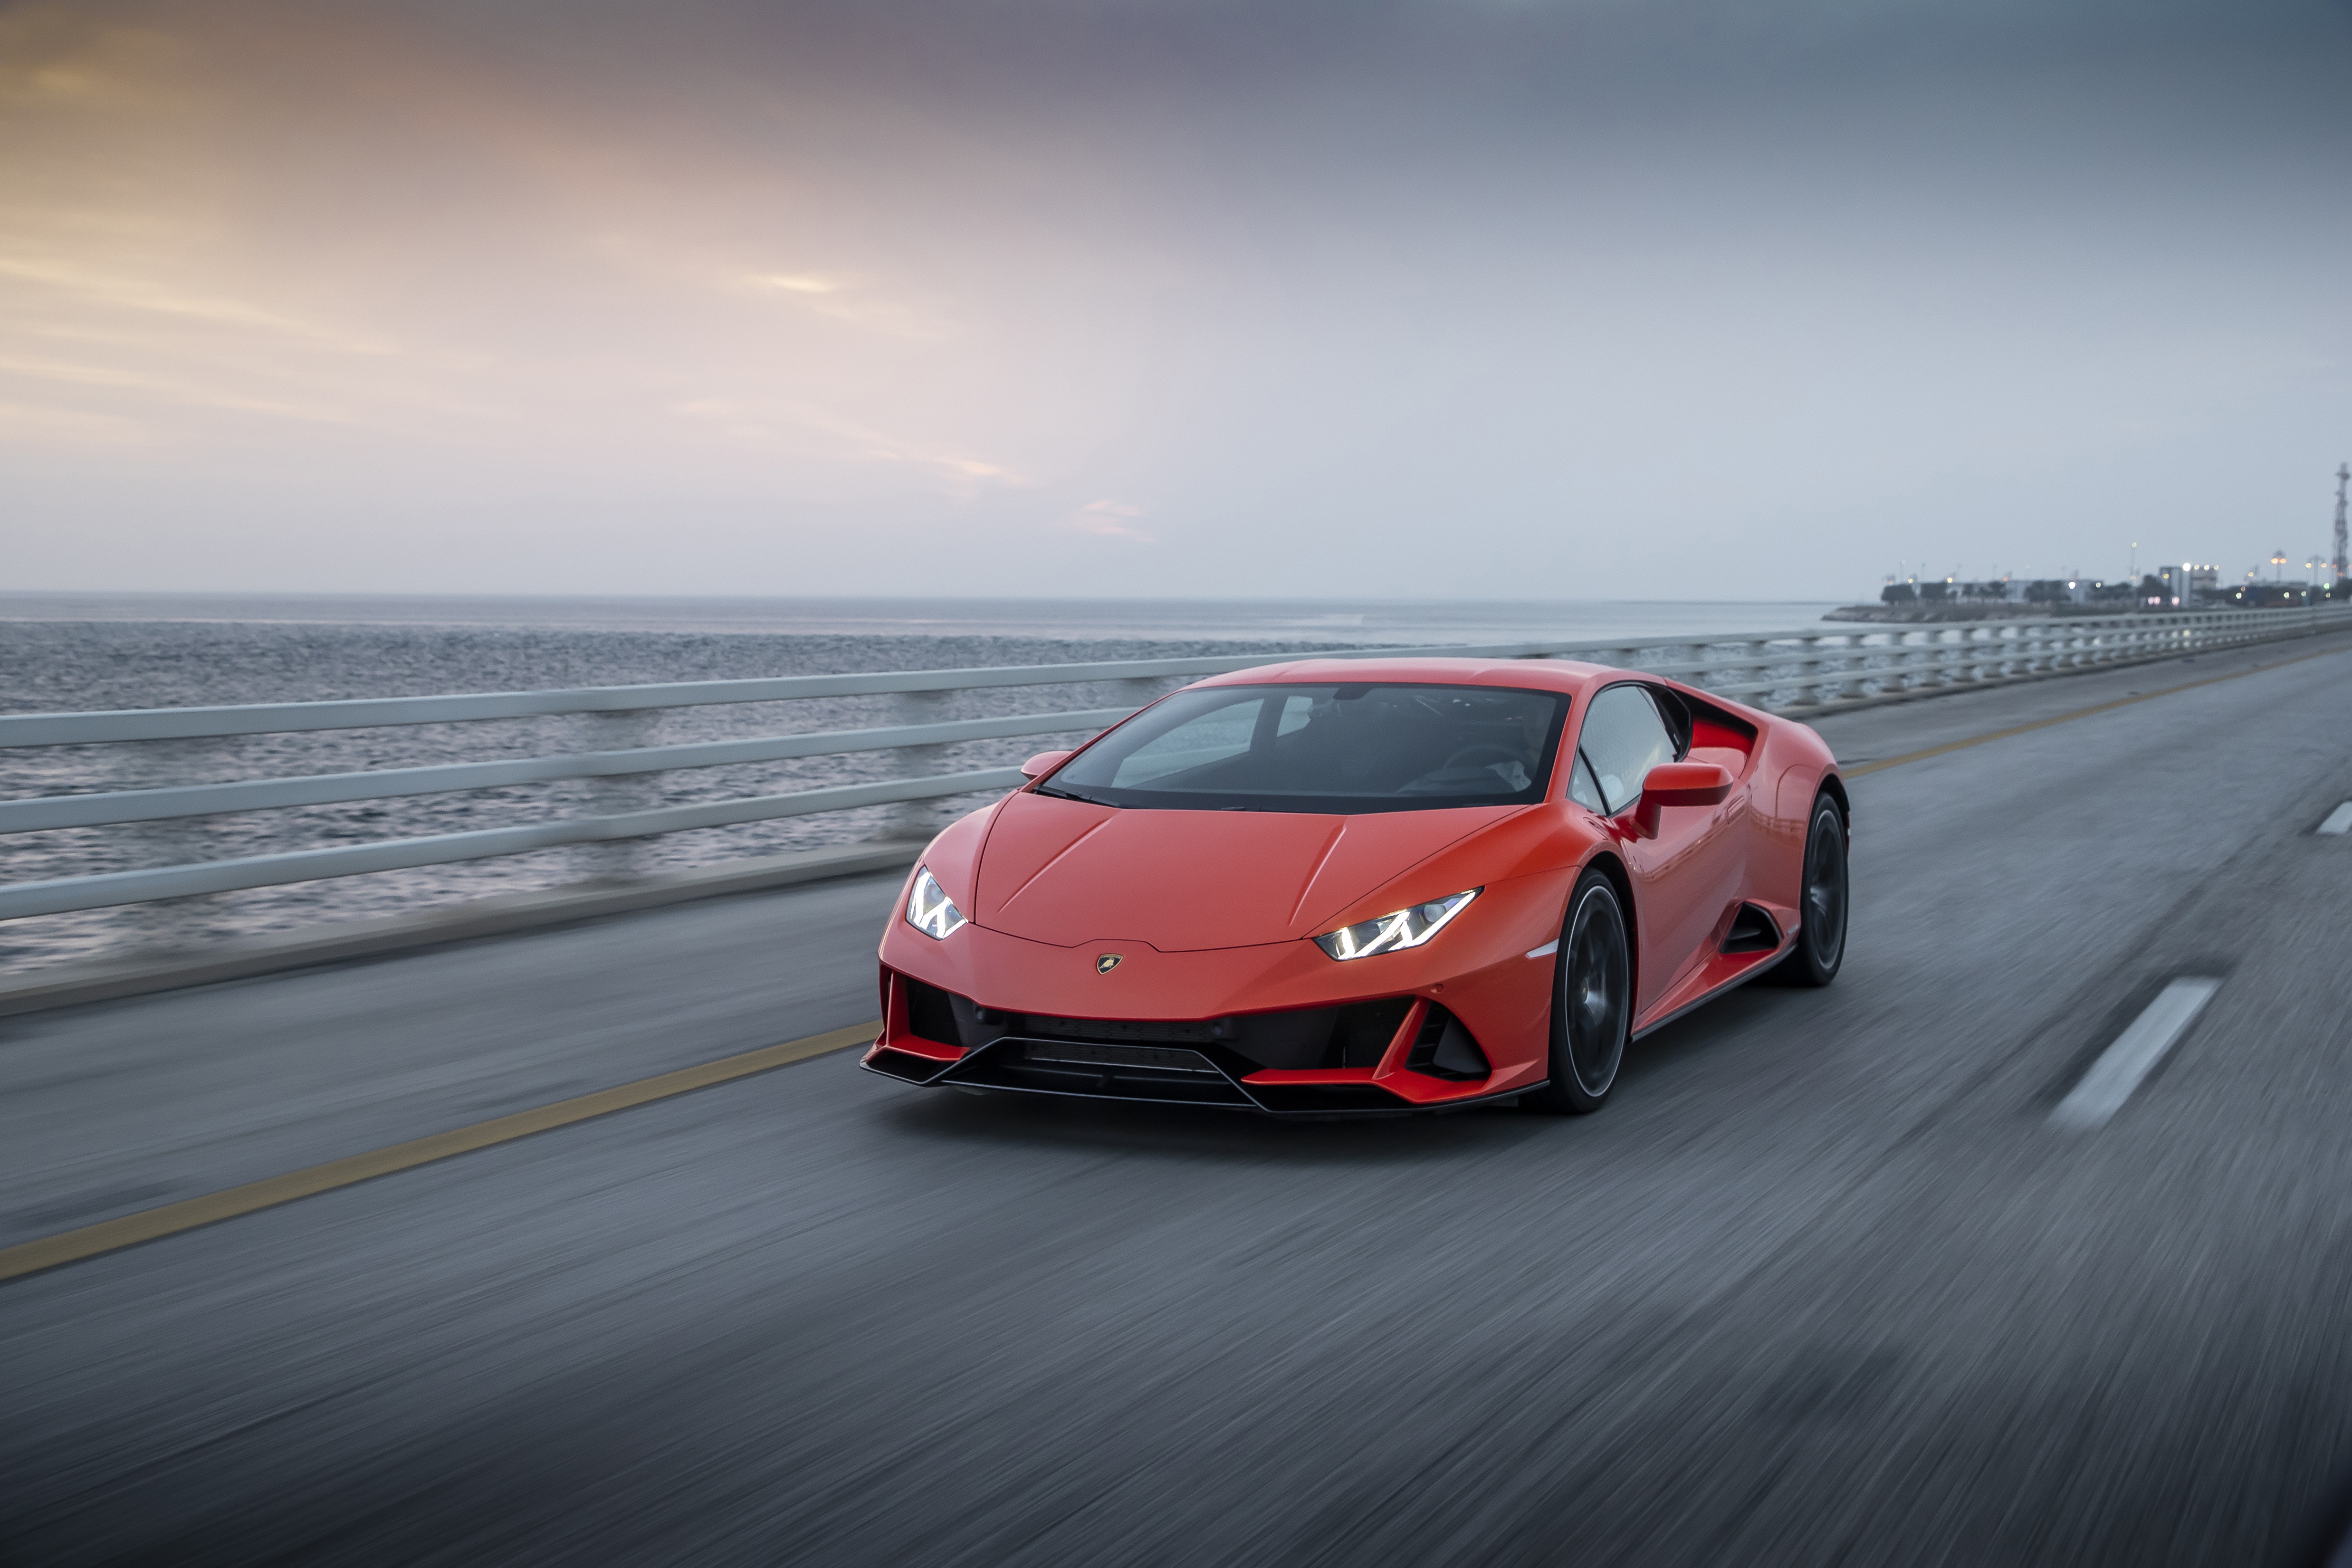 Descarga gratuita de fondo de pantalla para móvil de Lamborghini, Coche, Superdeportivo, Vehículos, Lamborghini Huracán Evo.